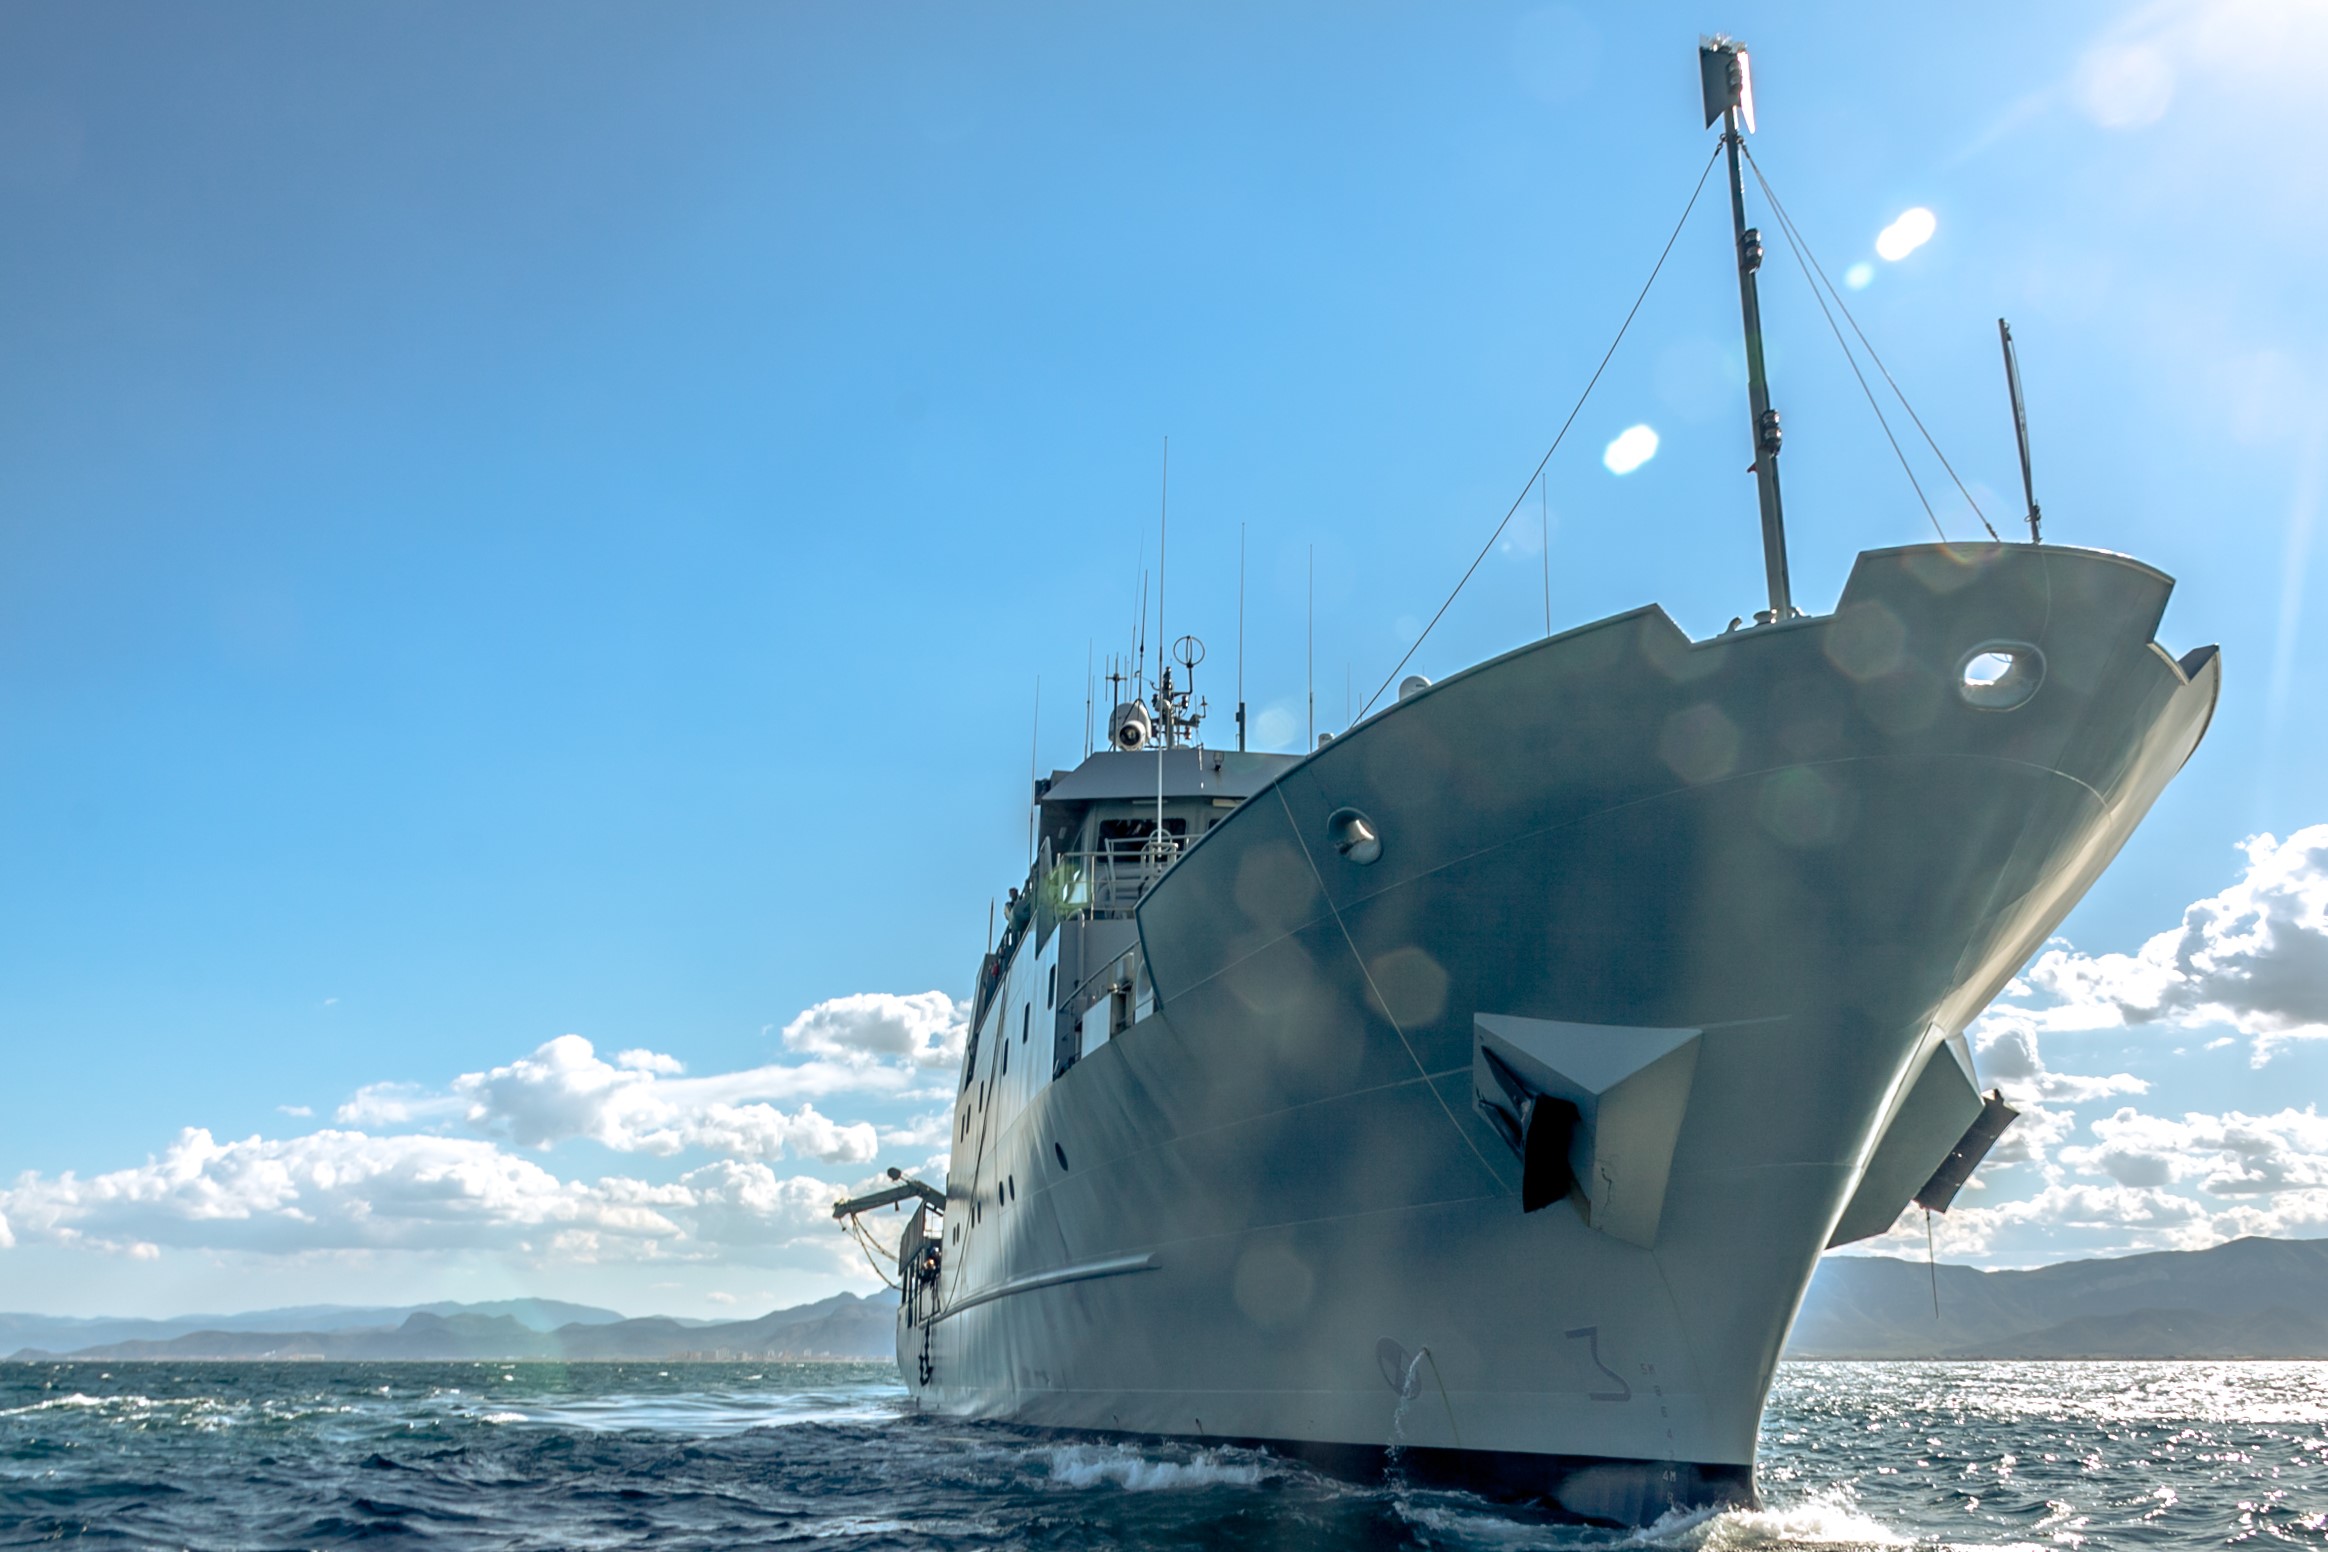 El patrullero Tarifa inicia su misión anual para la vigilancia, control e inspección pesquera en el Atlántico Noroeste.